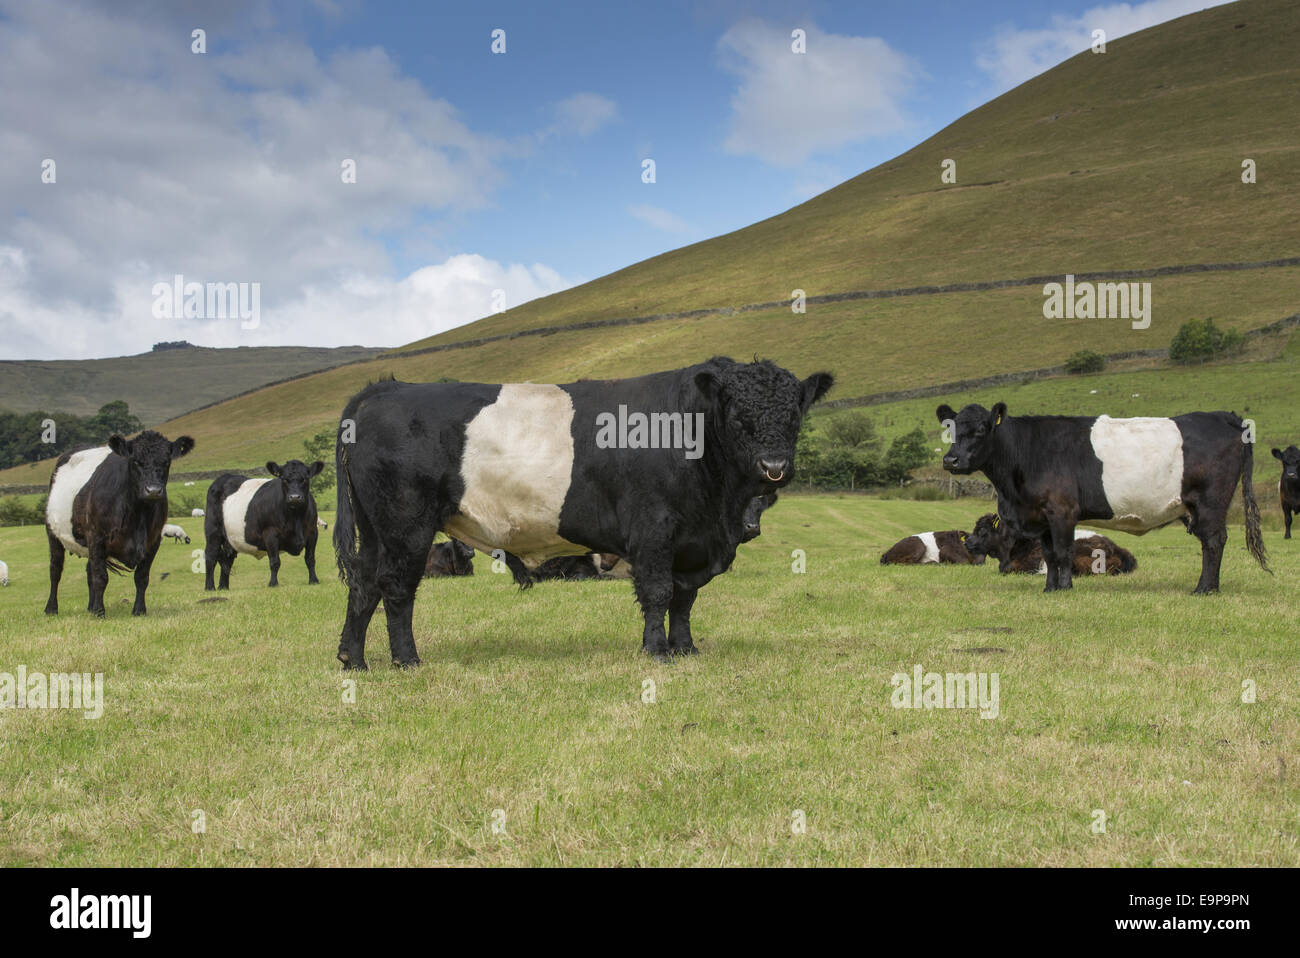 Les bovins domestiques, à ceinture, Bull et les vaches du troupeau, debout dans les pâturages, Edale, Peak District N.P., Derbyshire, Angleterre, Août Banque D'Images